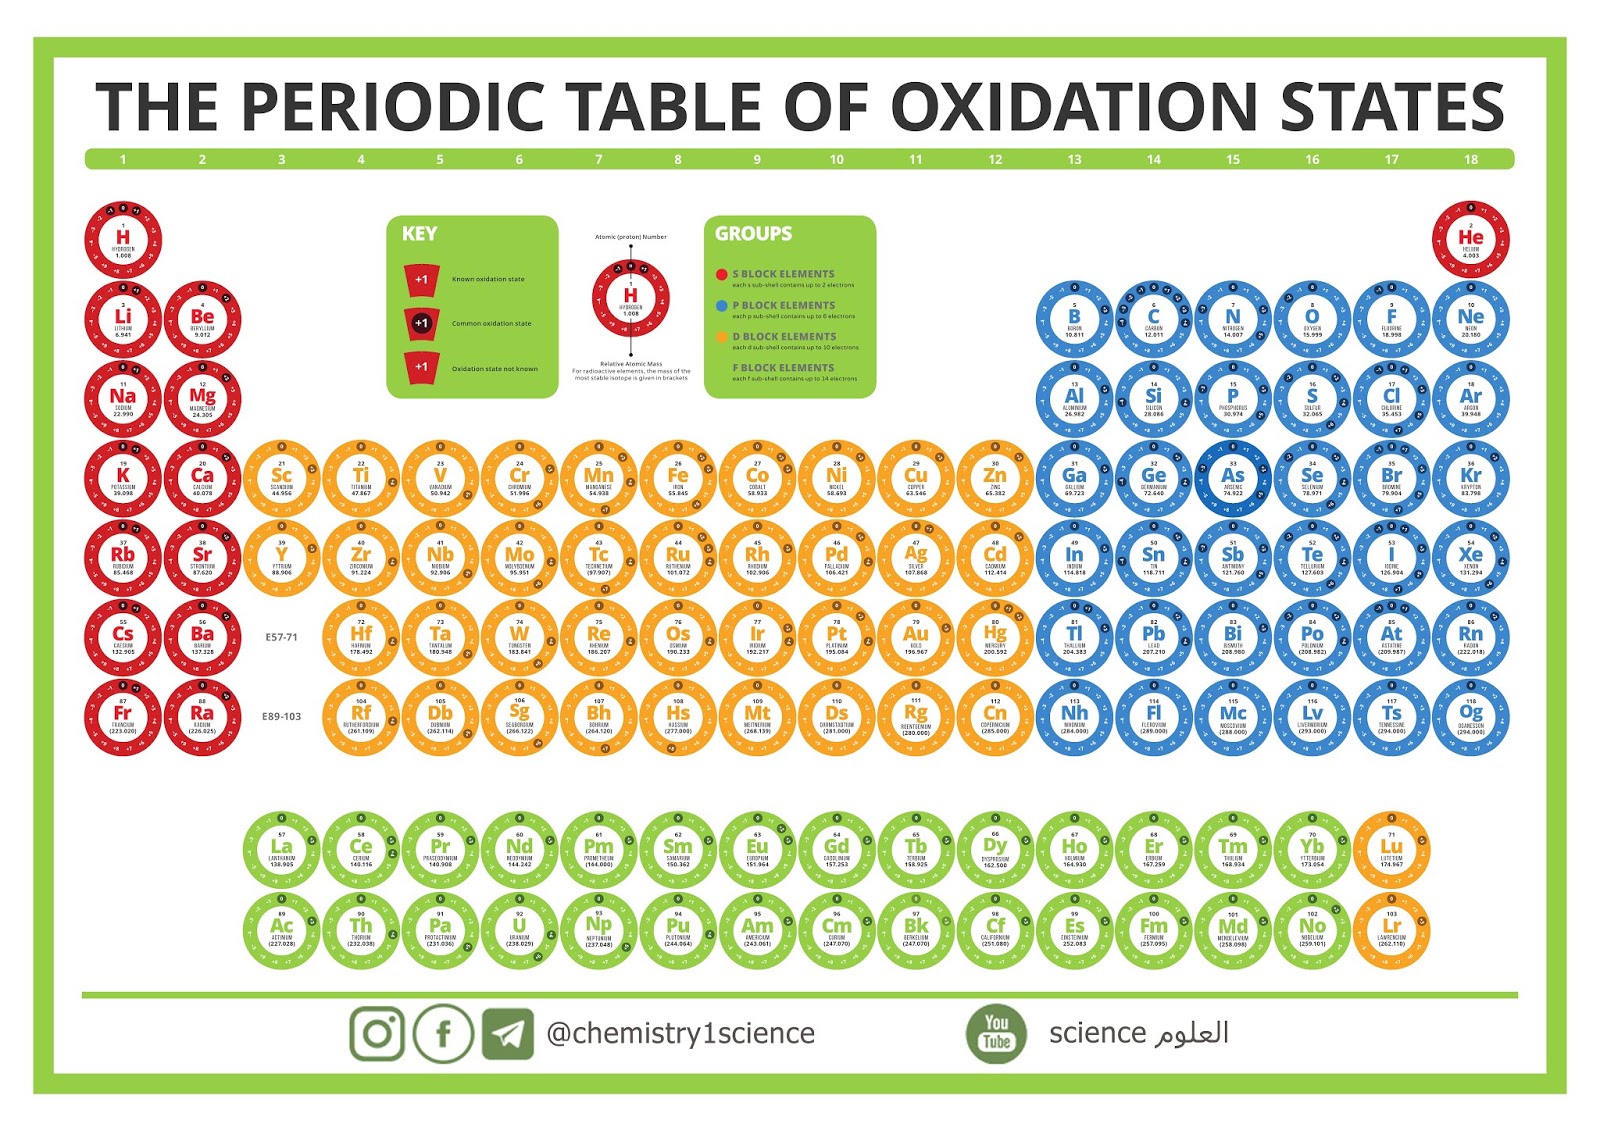 الجدول الدوري لحالات الأكسدة  The Periodic Table of Oxidation States